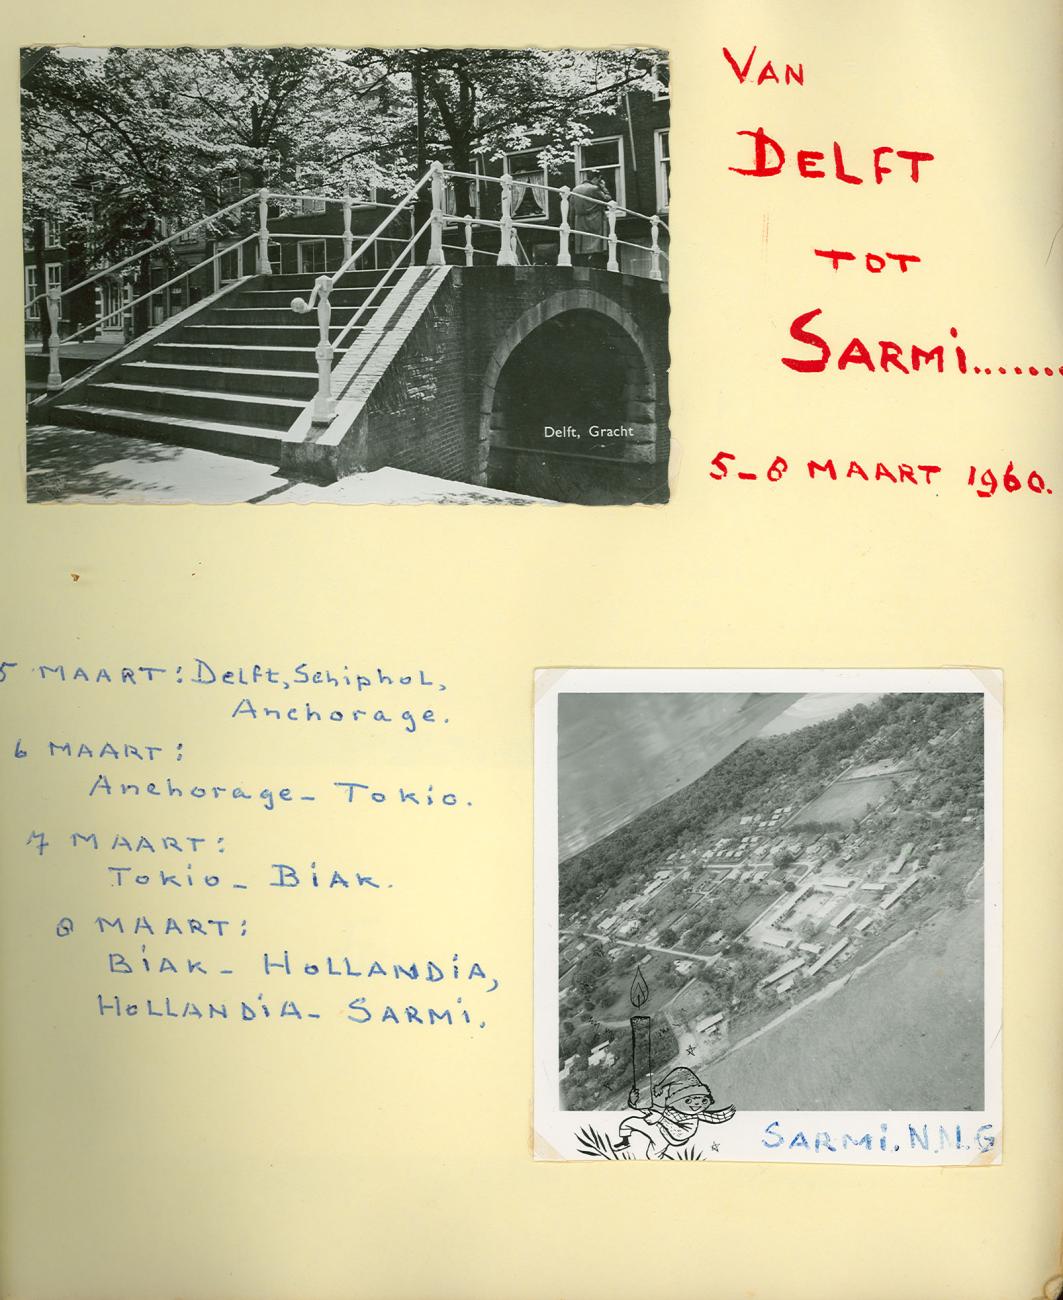 BD/83/1 - 
Sarmi sen from the sky
